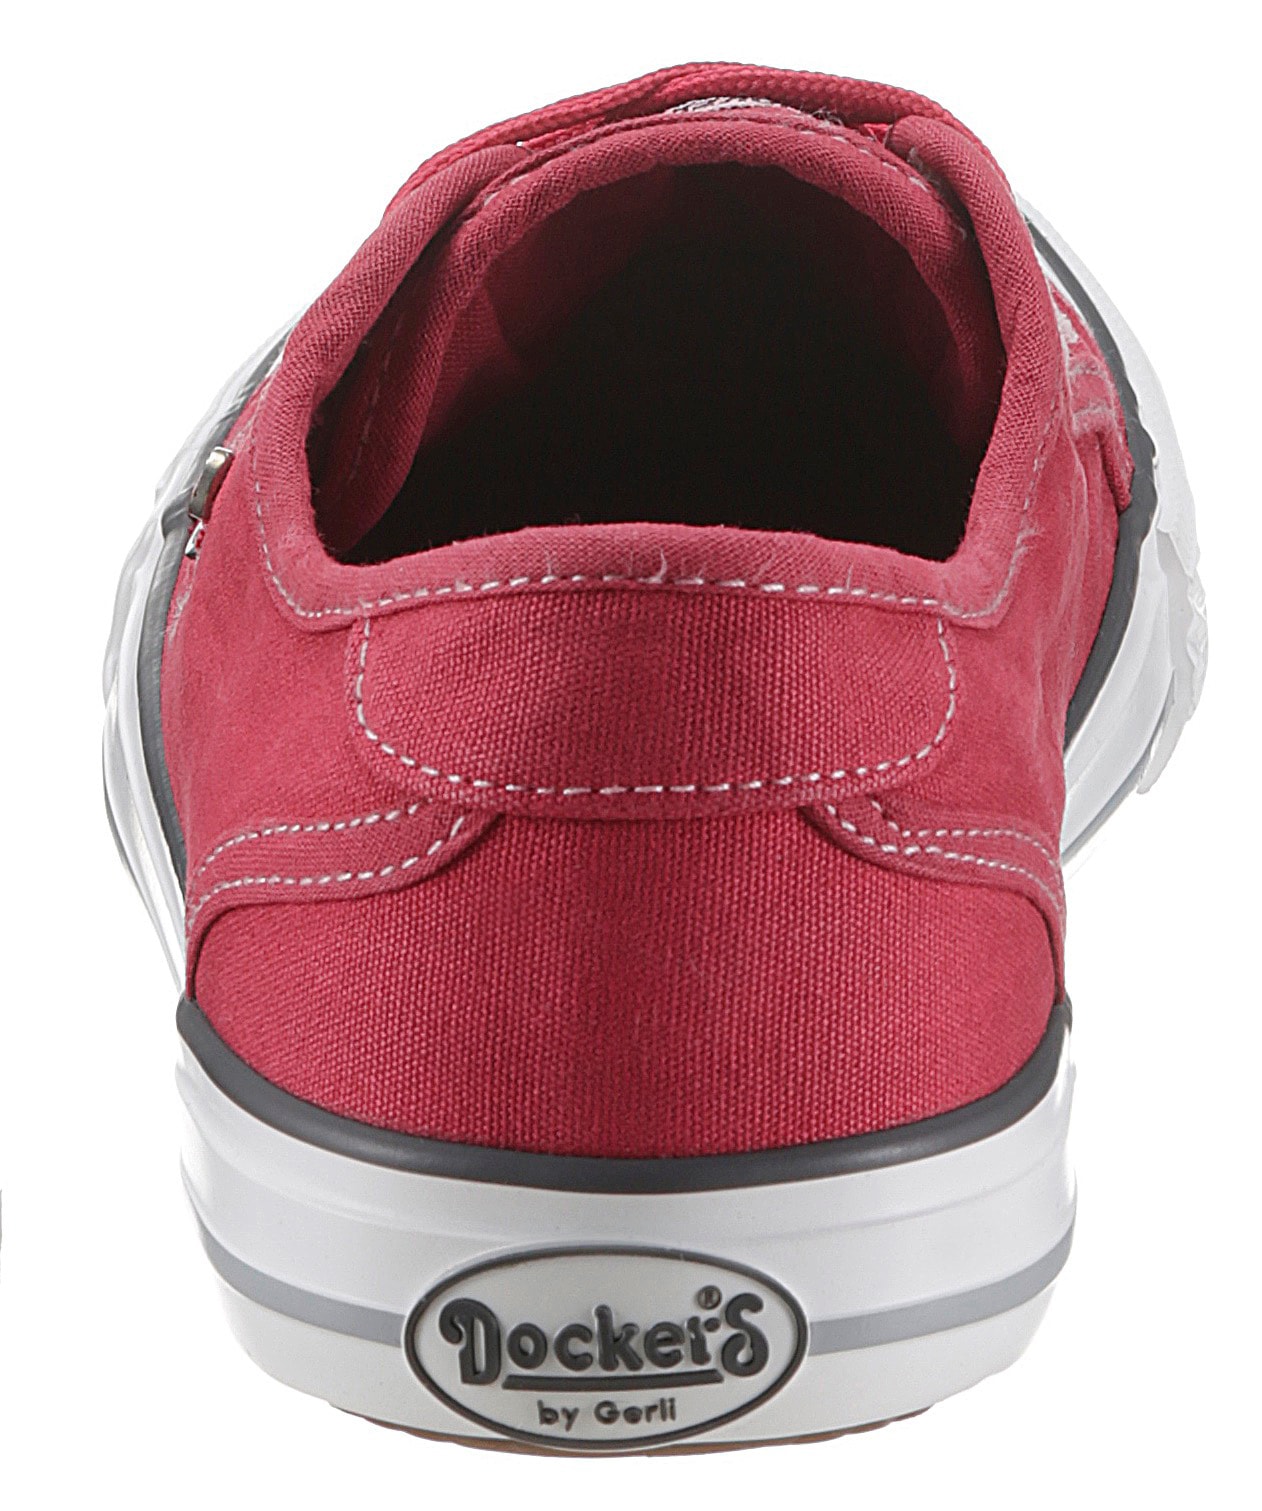 Dockers by Gerli Slip-On Sneaker, Sneaker, Schlupfschuh, Freizeitschuh mit elastischer Zierschnürung